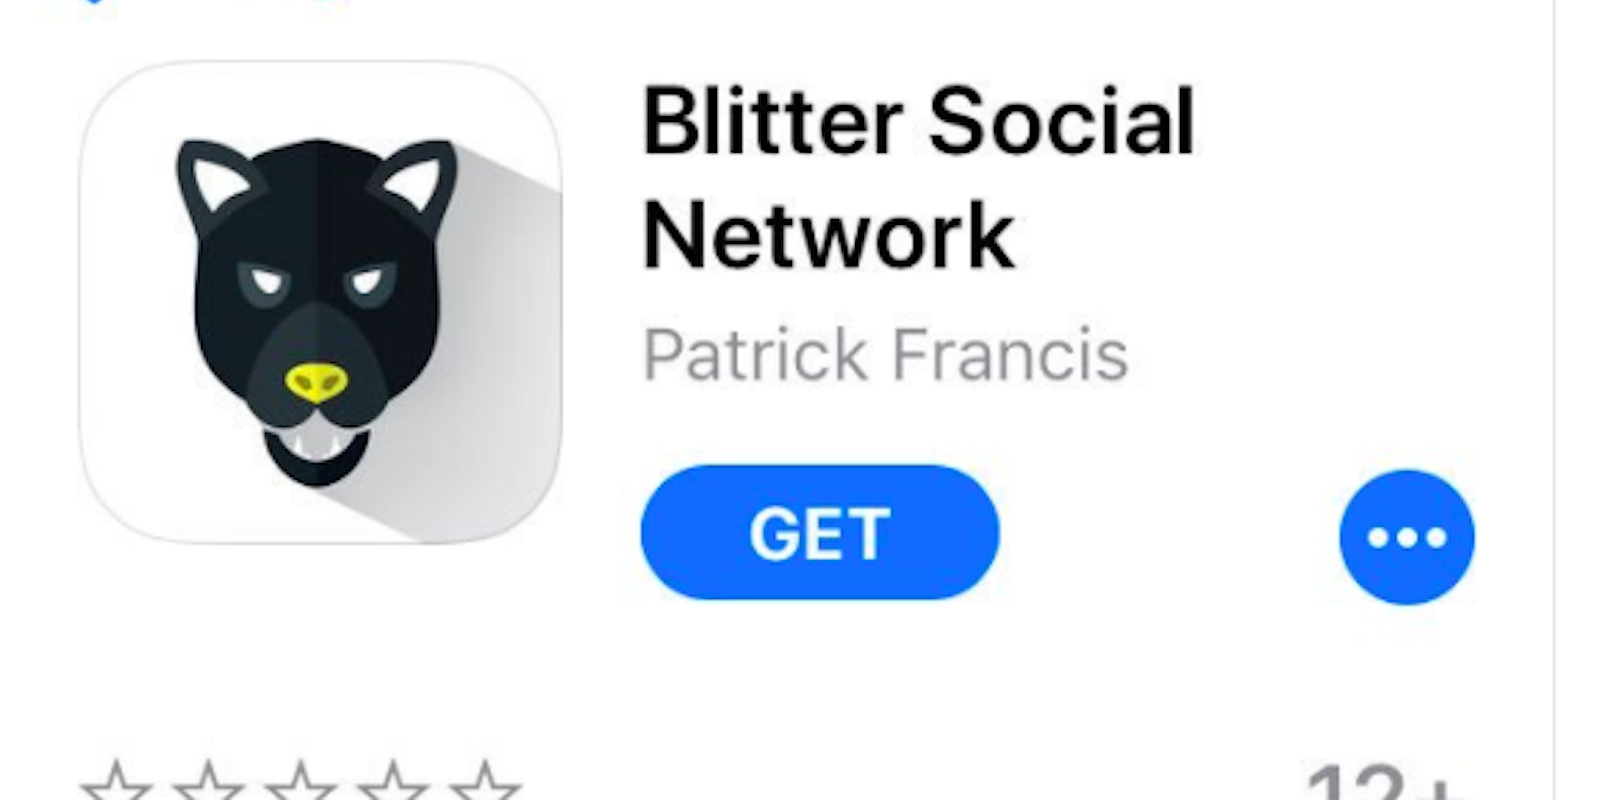 Blitter Social Network